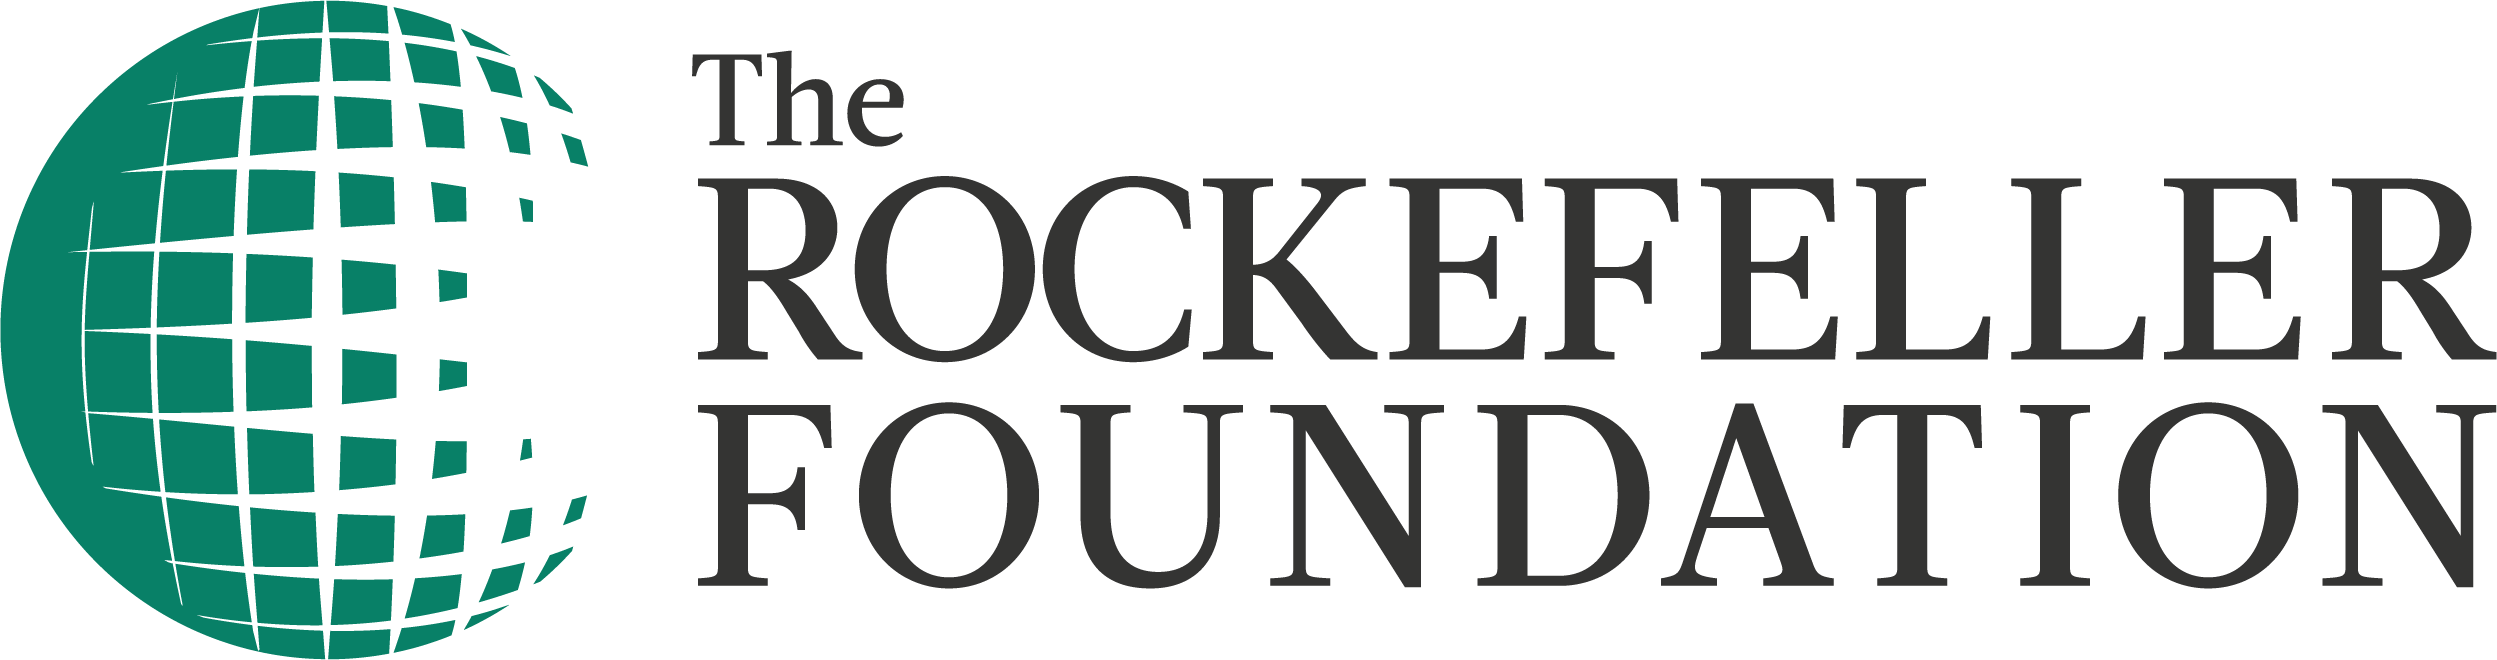 File:Rockefeller Foundation Logo.png